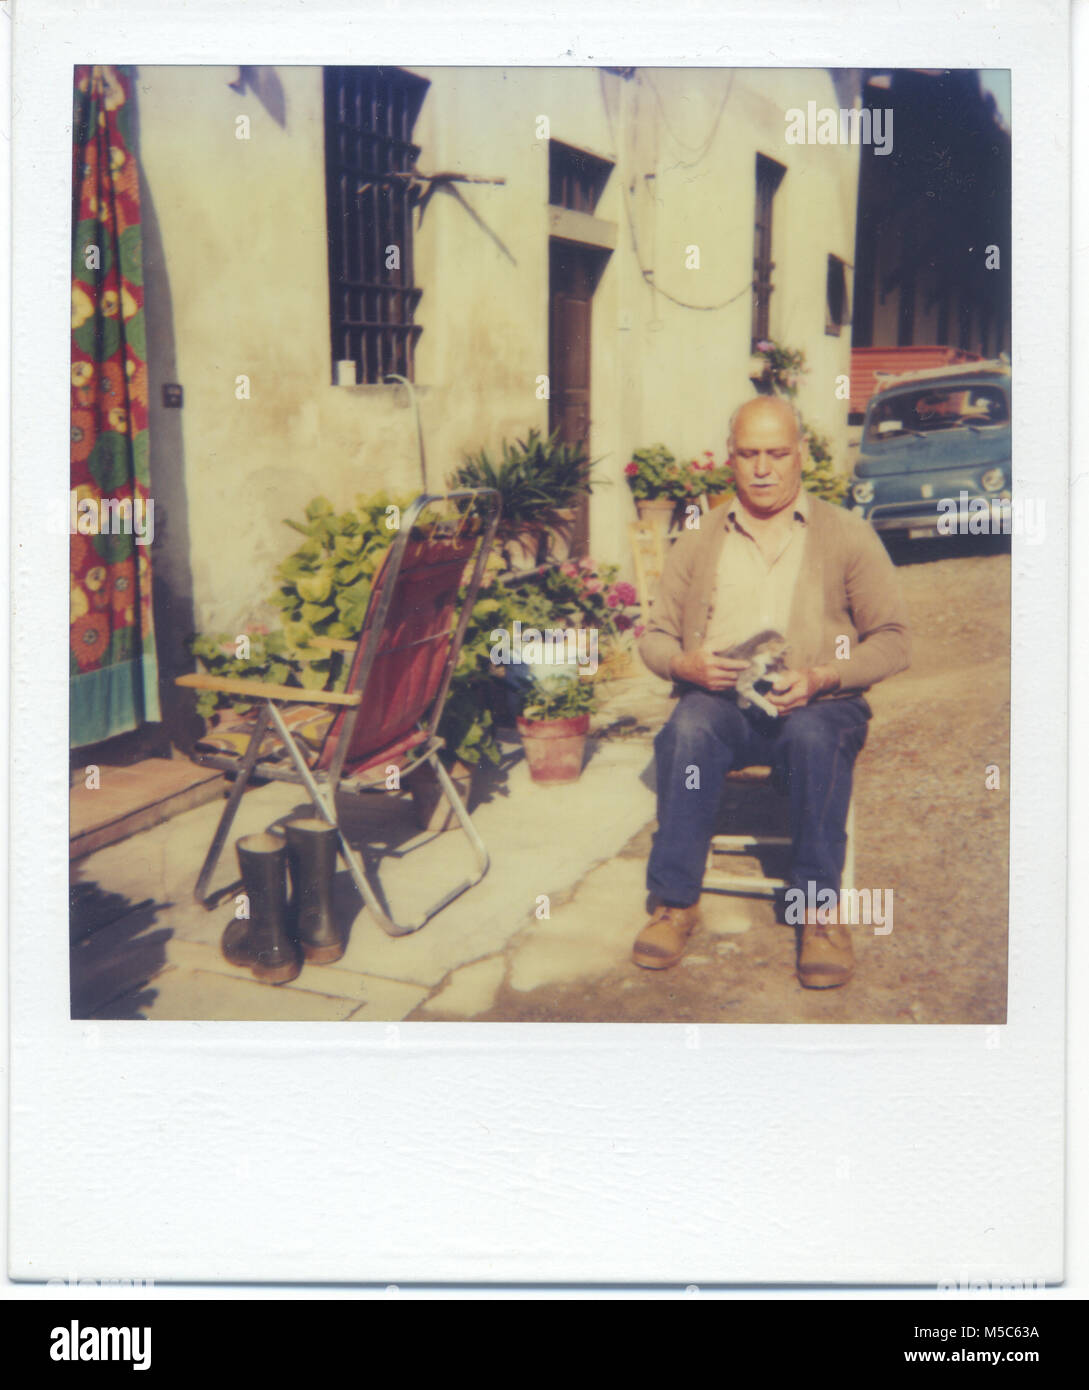 1980 s älterer Mann entspannt sich mit seiner Katze gerade vor einem Bauernhaus in der cuntryside der Toskana. Fattoria Casamora Arezzo, Italien Stockfoto